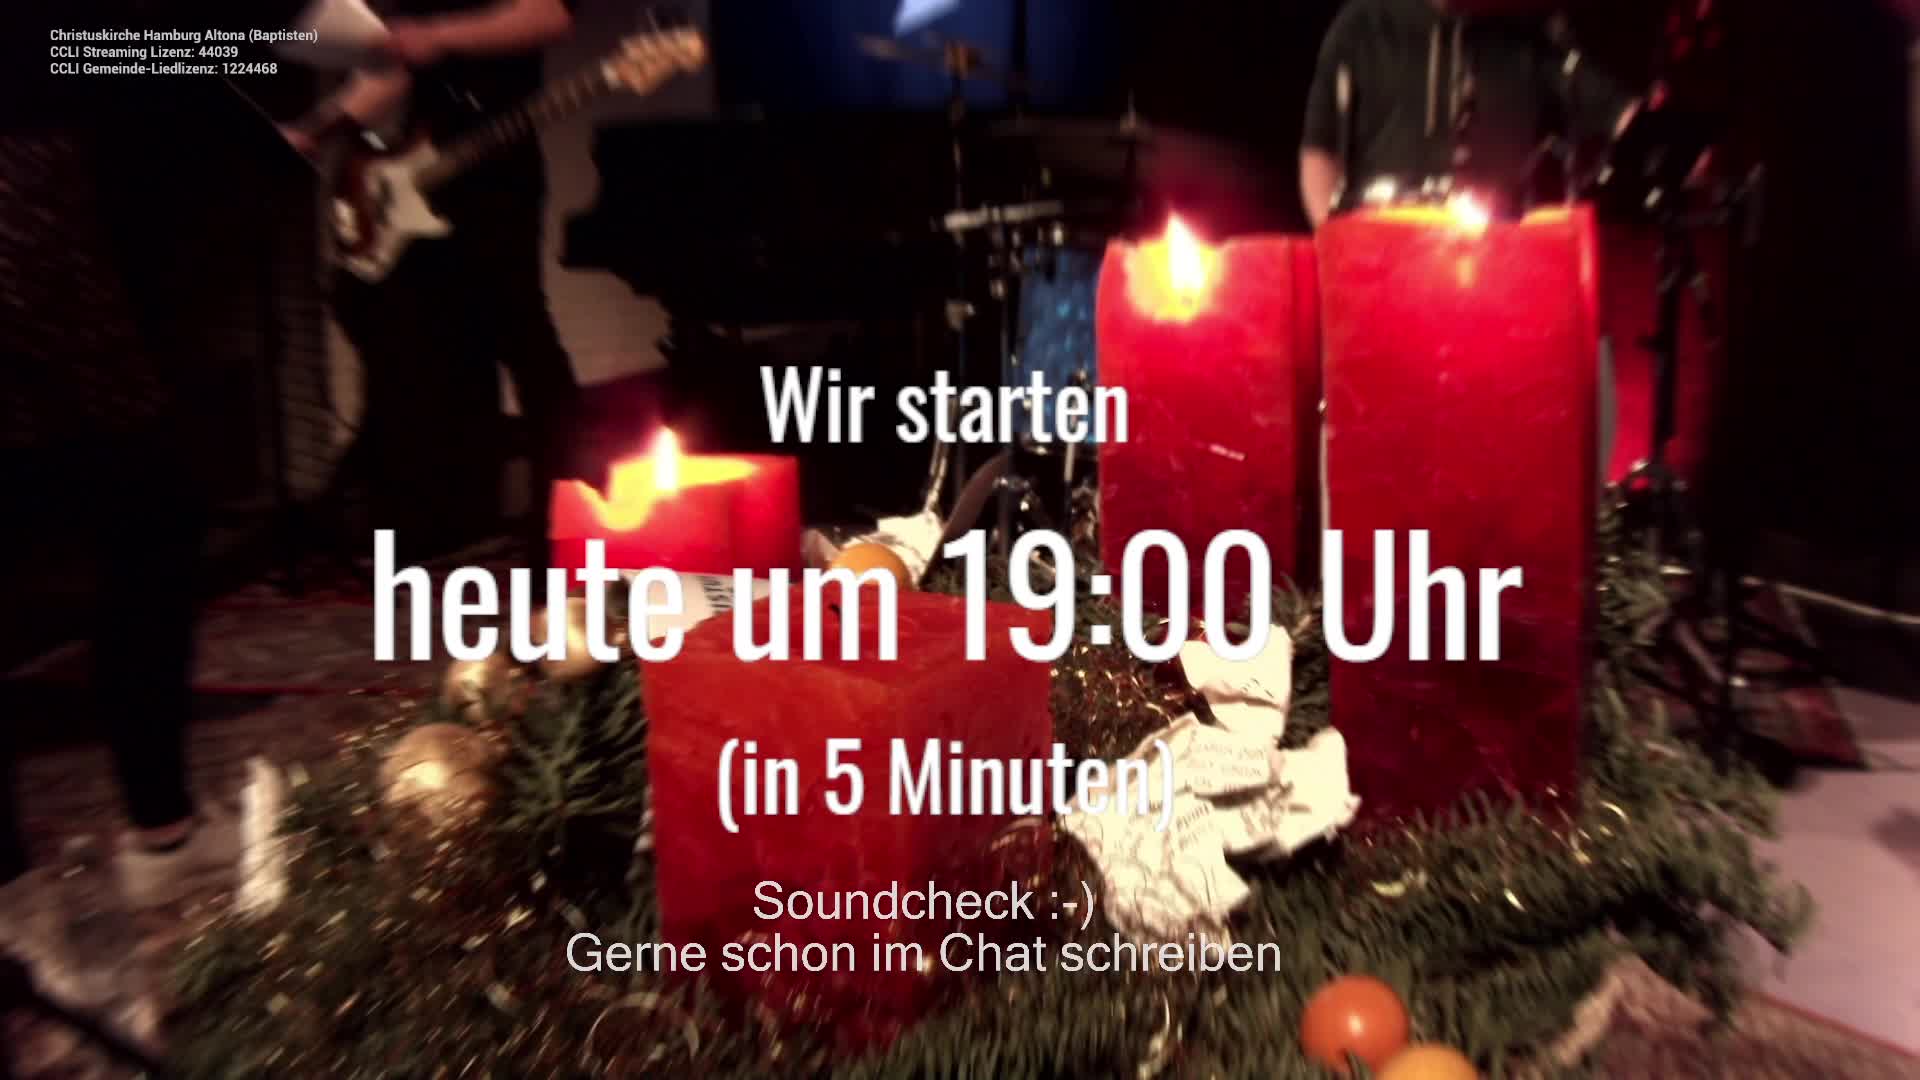 Lobpreiszeit #33 - Livestream Christuskirche Hamburg Altona